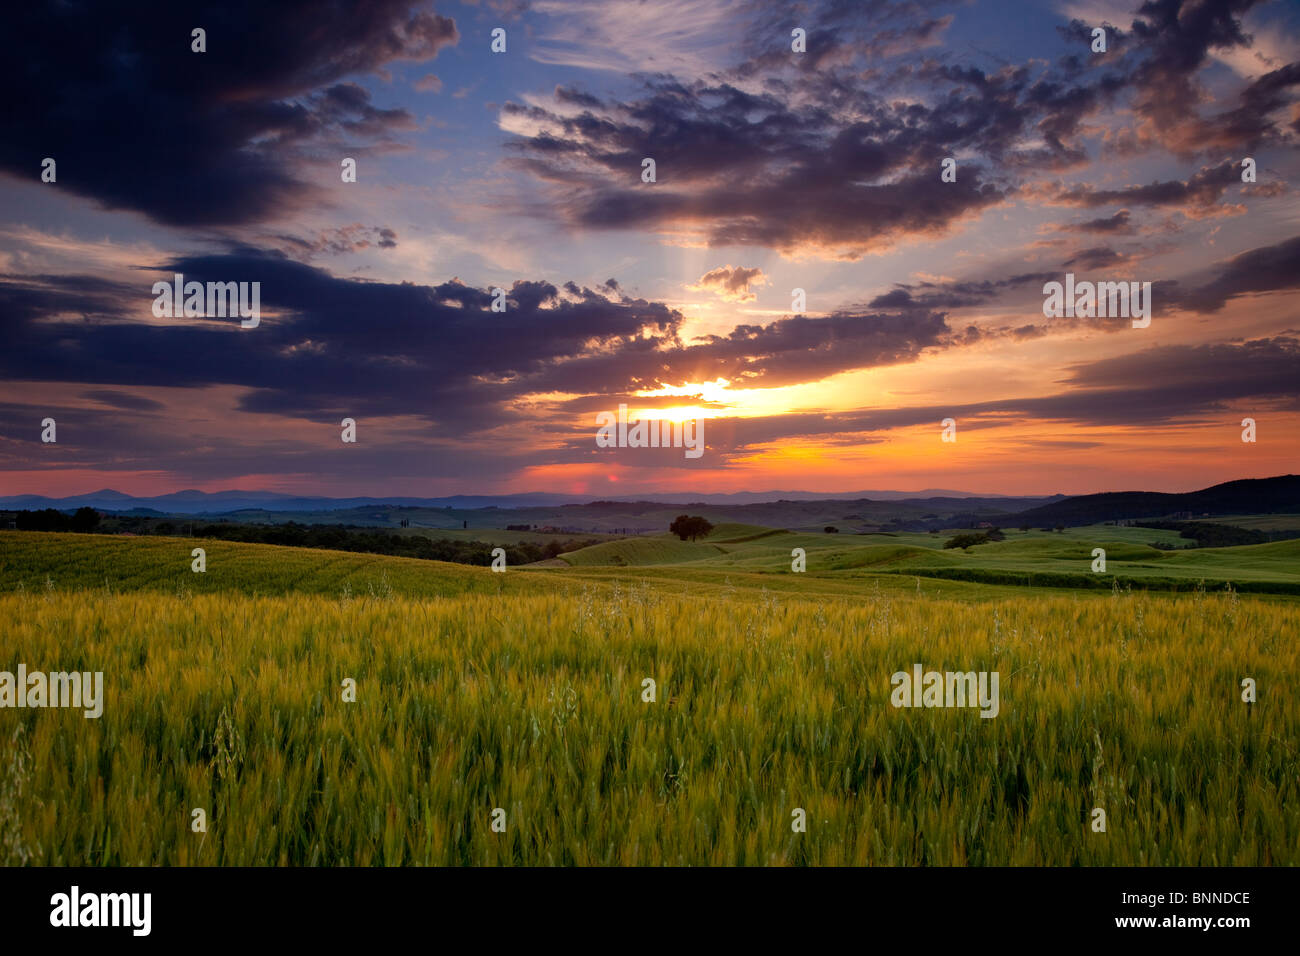 Sunset over wheat field near Pienza, Tuscany Italy Stock Photo